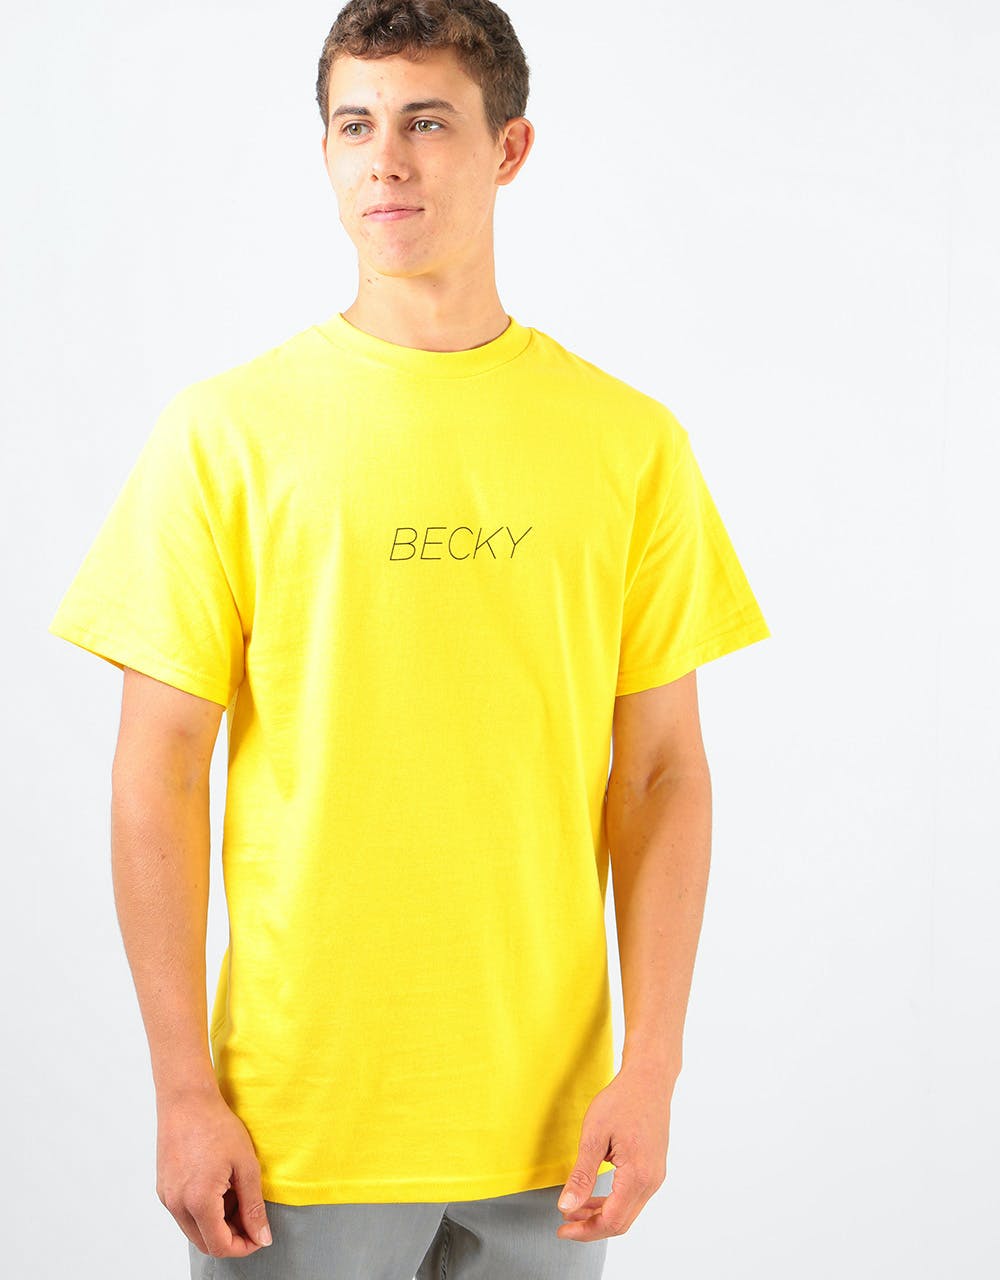 Becky Factory Legs T-Shirt - Yellow